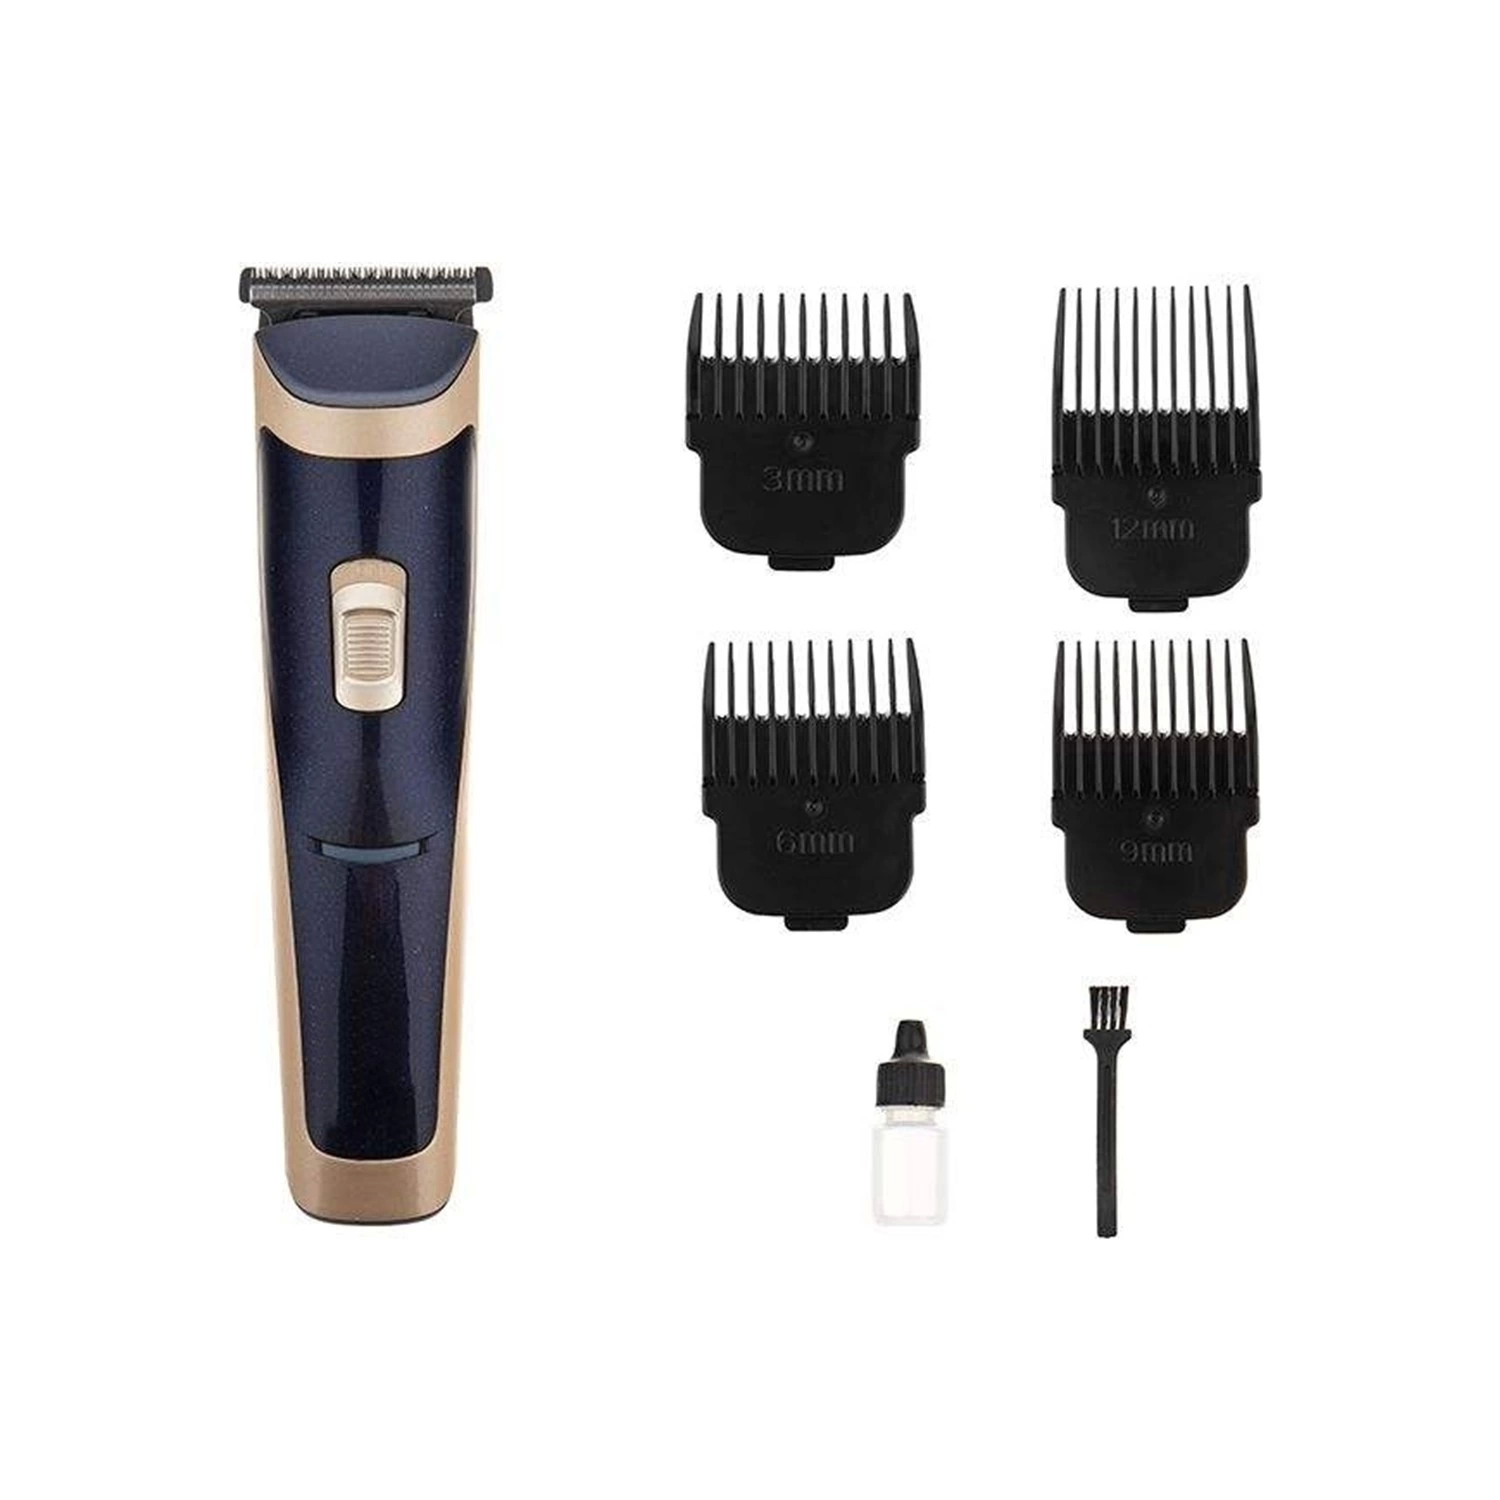 Şarj Göstergeli Profesyonel Şarjlı Saç Sakal Ense Tıraş Makinesi ( Lisinya )